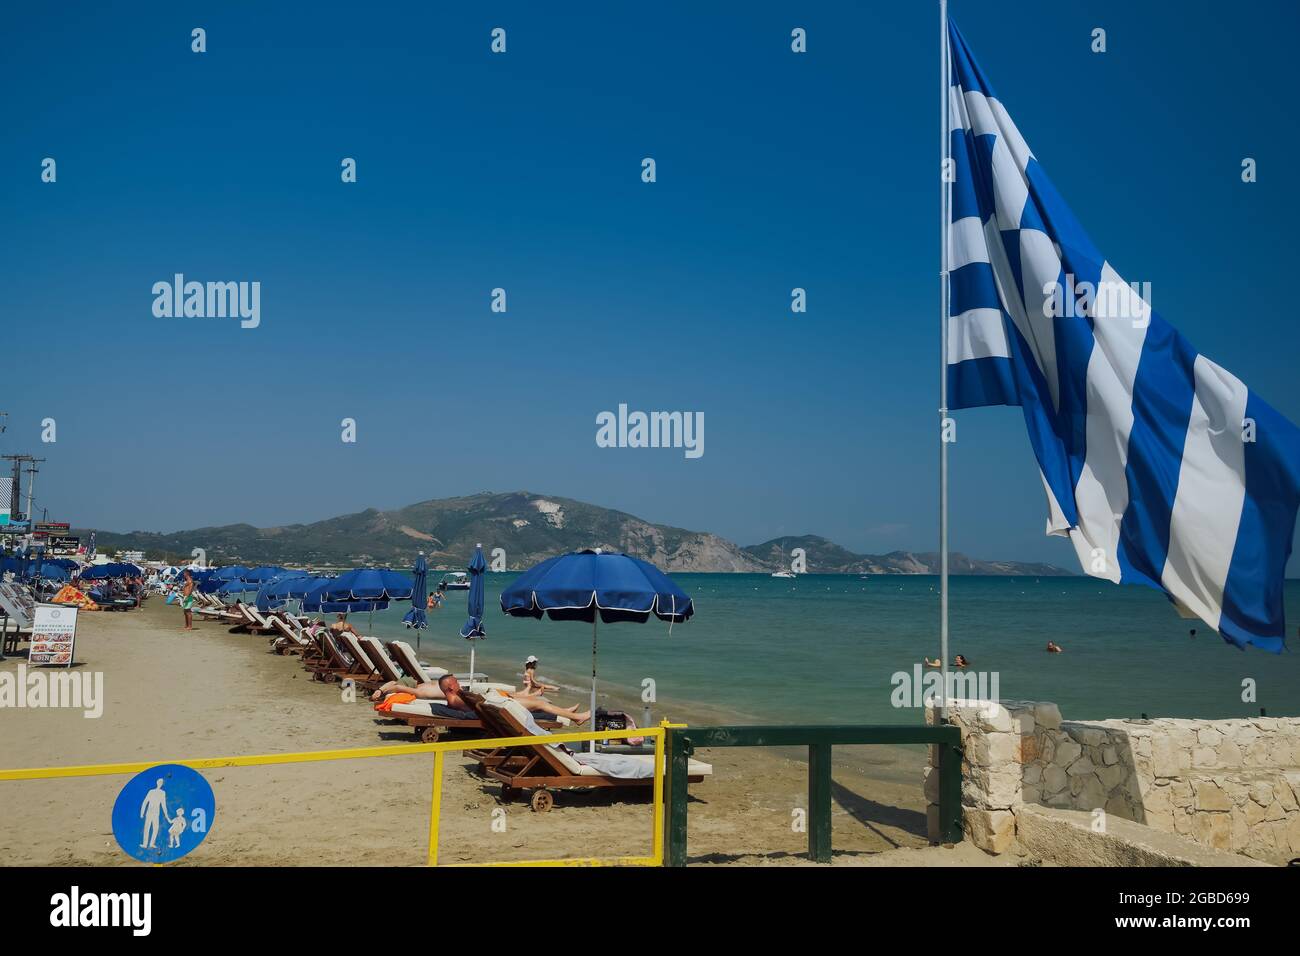 Zante, Grecia terreno mediterraneo organizzato spiaggia con bandiera greca e bagnanti. Giorno soleggiato vista del lungomare di Laganas con mare calmo e lettini con ombrelloni sotto il cielo blu. Foto Stock